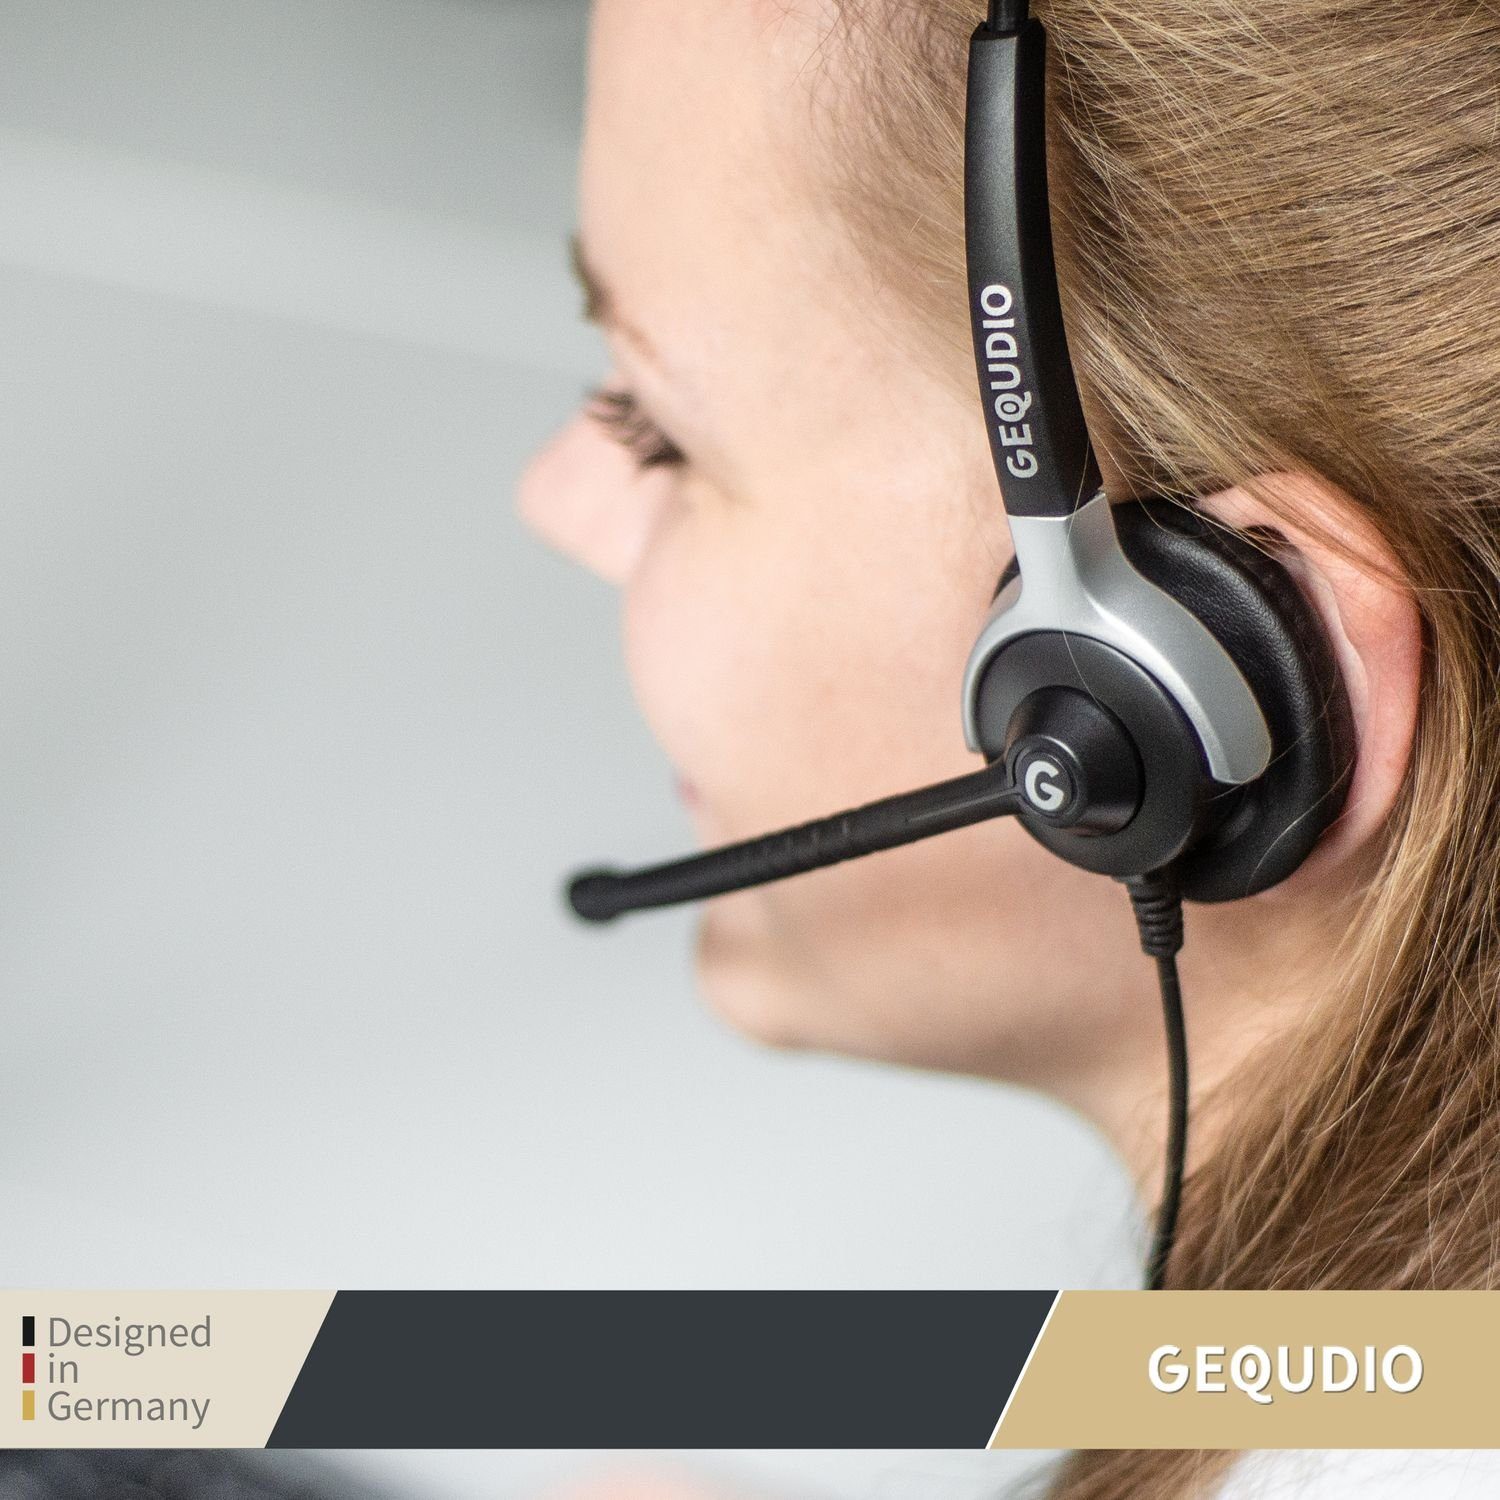 GEQUDIO für Gigaset, Panasonic, Grandstream, 80g Federstahl, für Headset aus Telefone Klinke 2,5mm (2-Ohr-Headset, Bügel mit mit Anschlusskabel) Endgeräte, leicht, inklusive mehrere Wechselverschluss Polycom